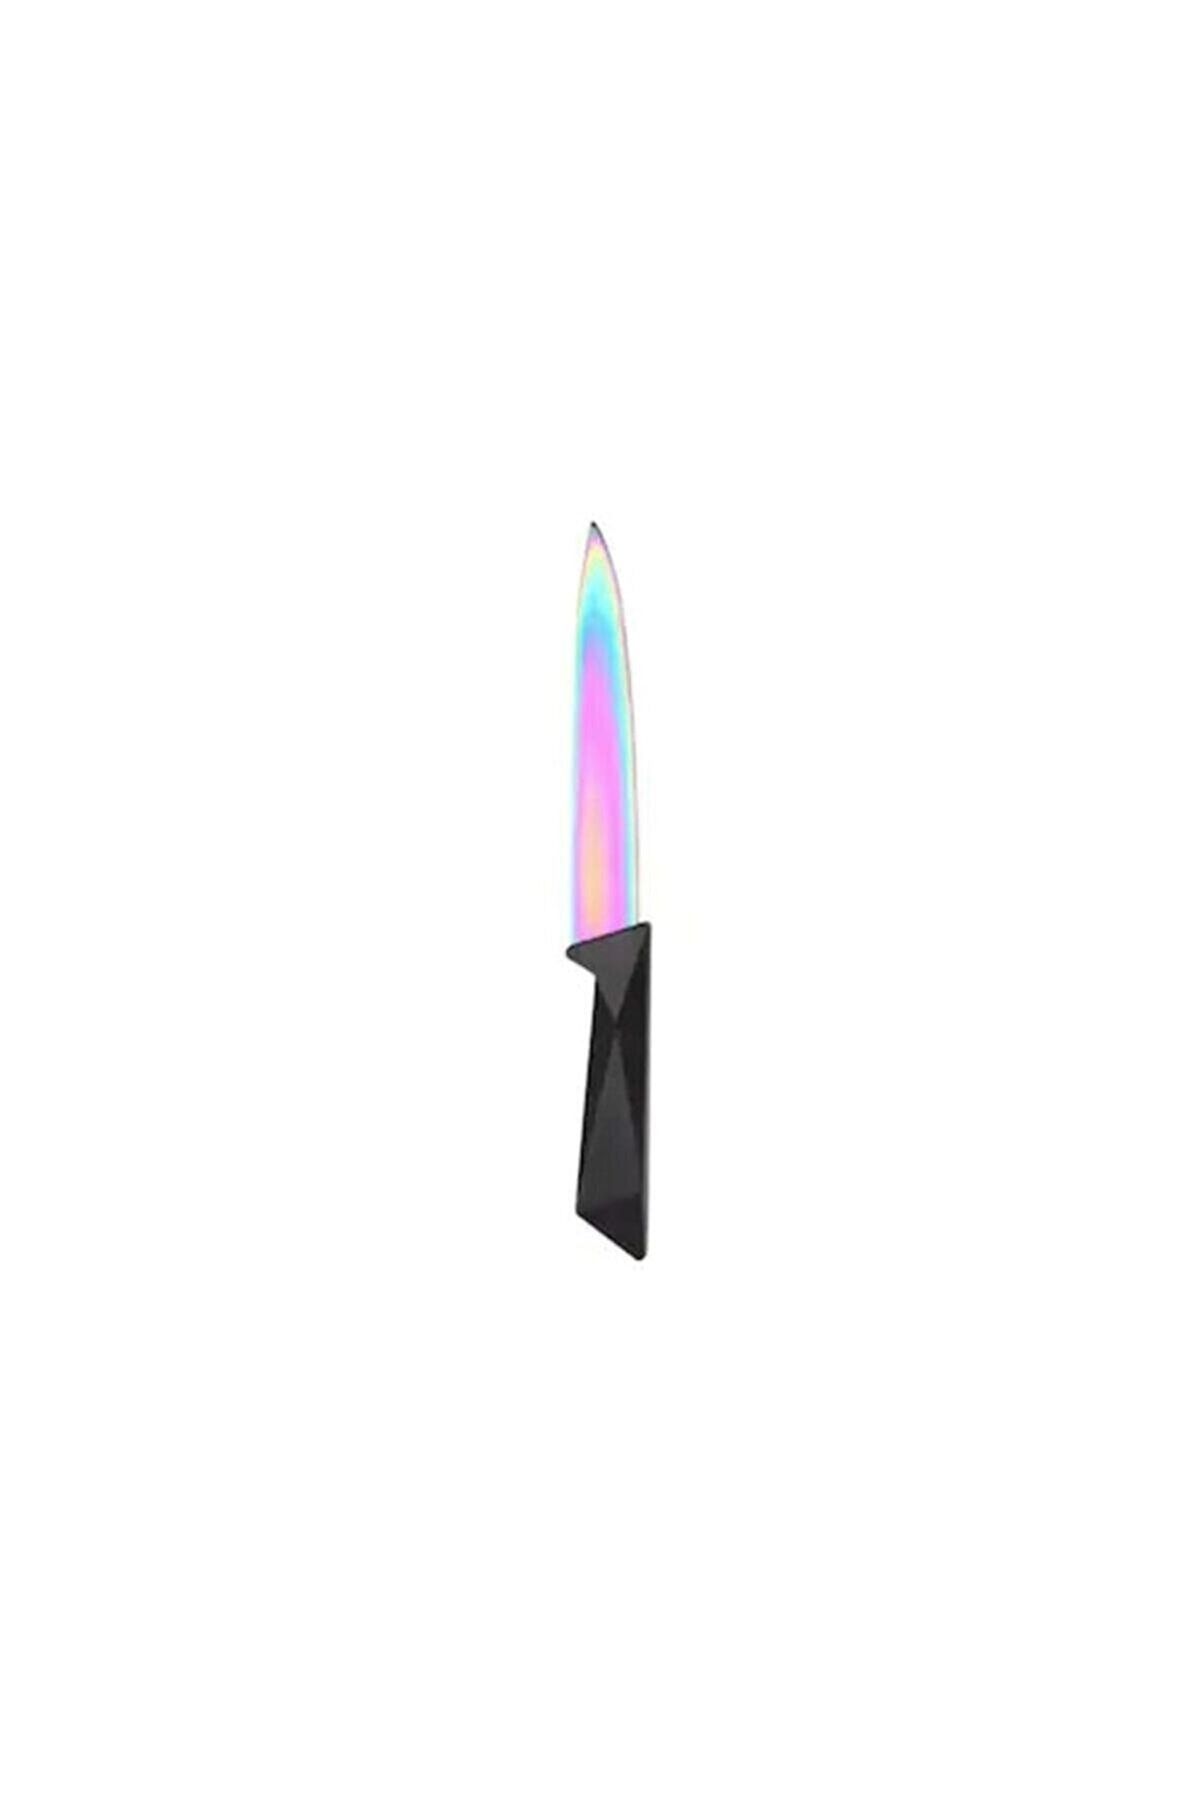 Rogen Home Platin Kaplama Bıçak Meyve Bıçağı 22.5 Cm